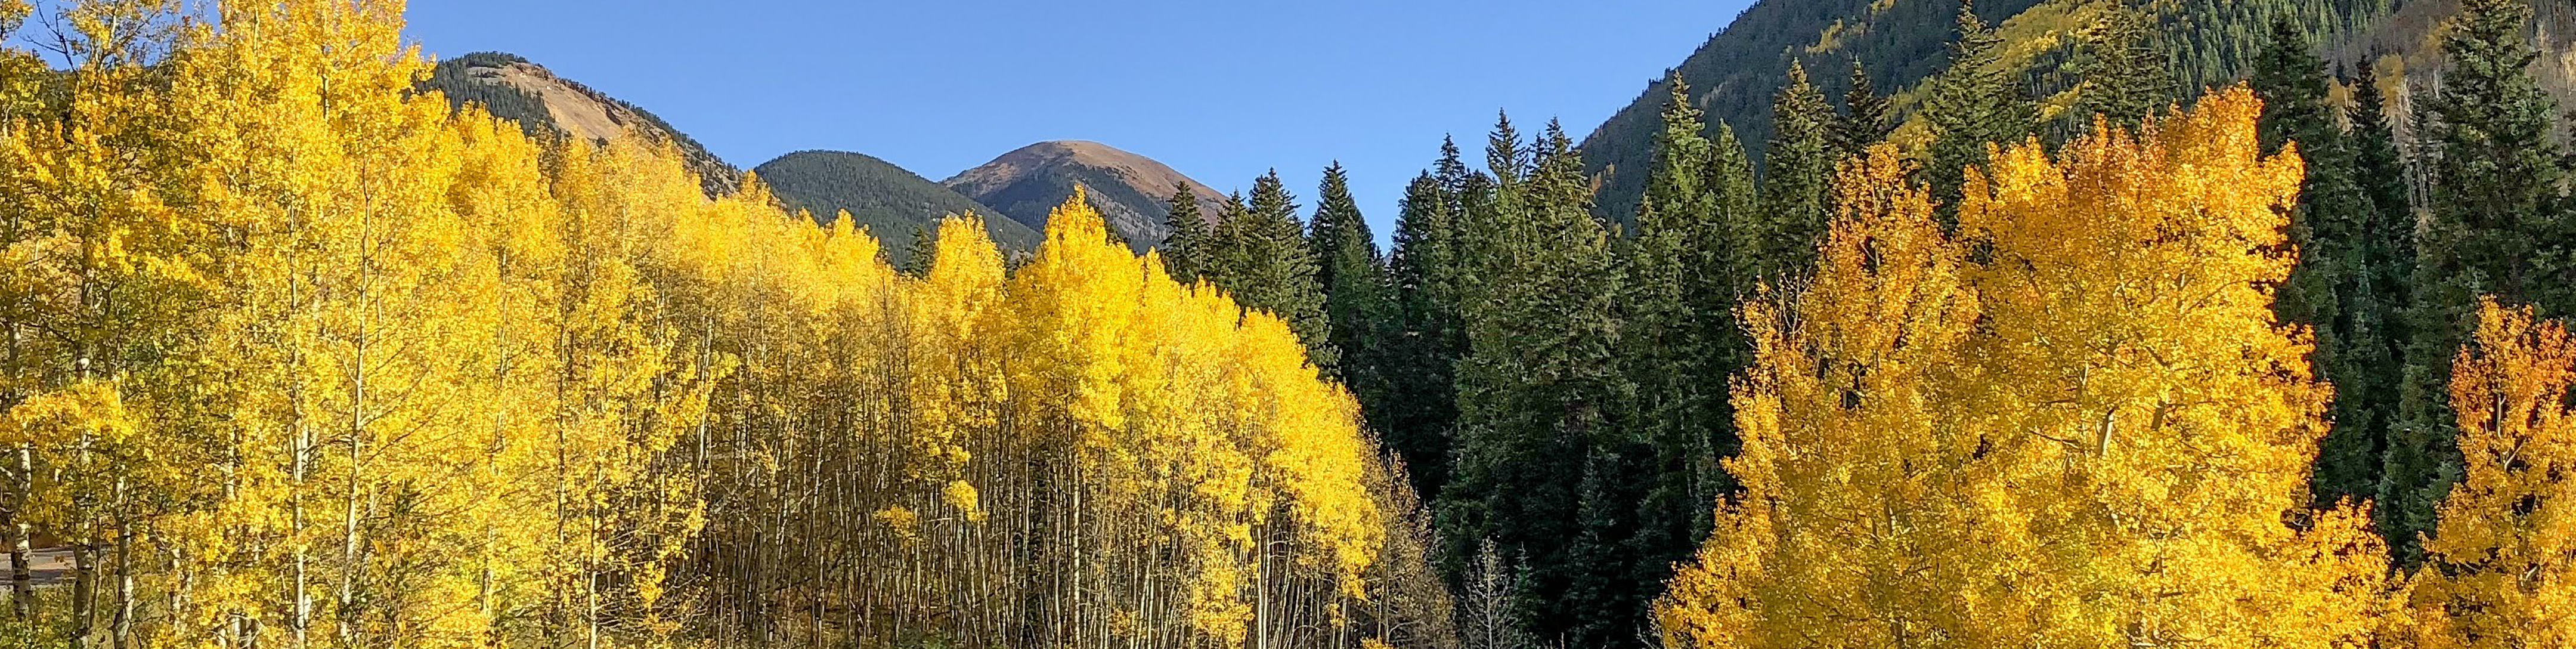 Golden Aspen trees against the rich green pines make Aspen an ideal fall destination